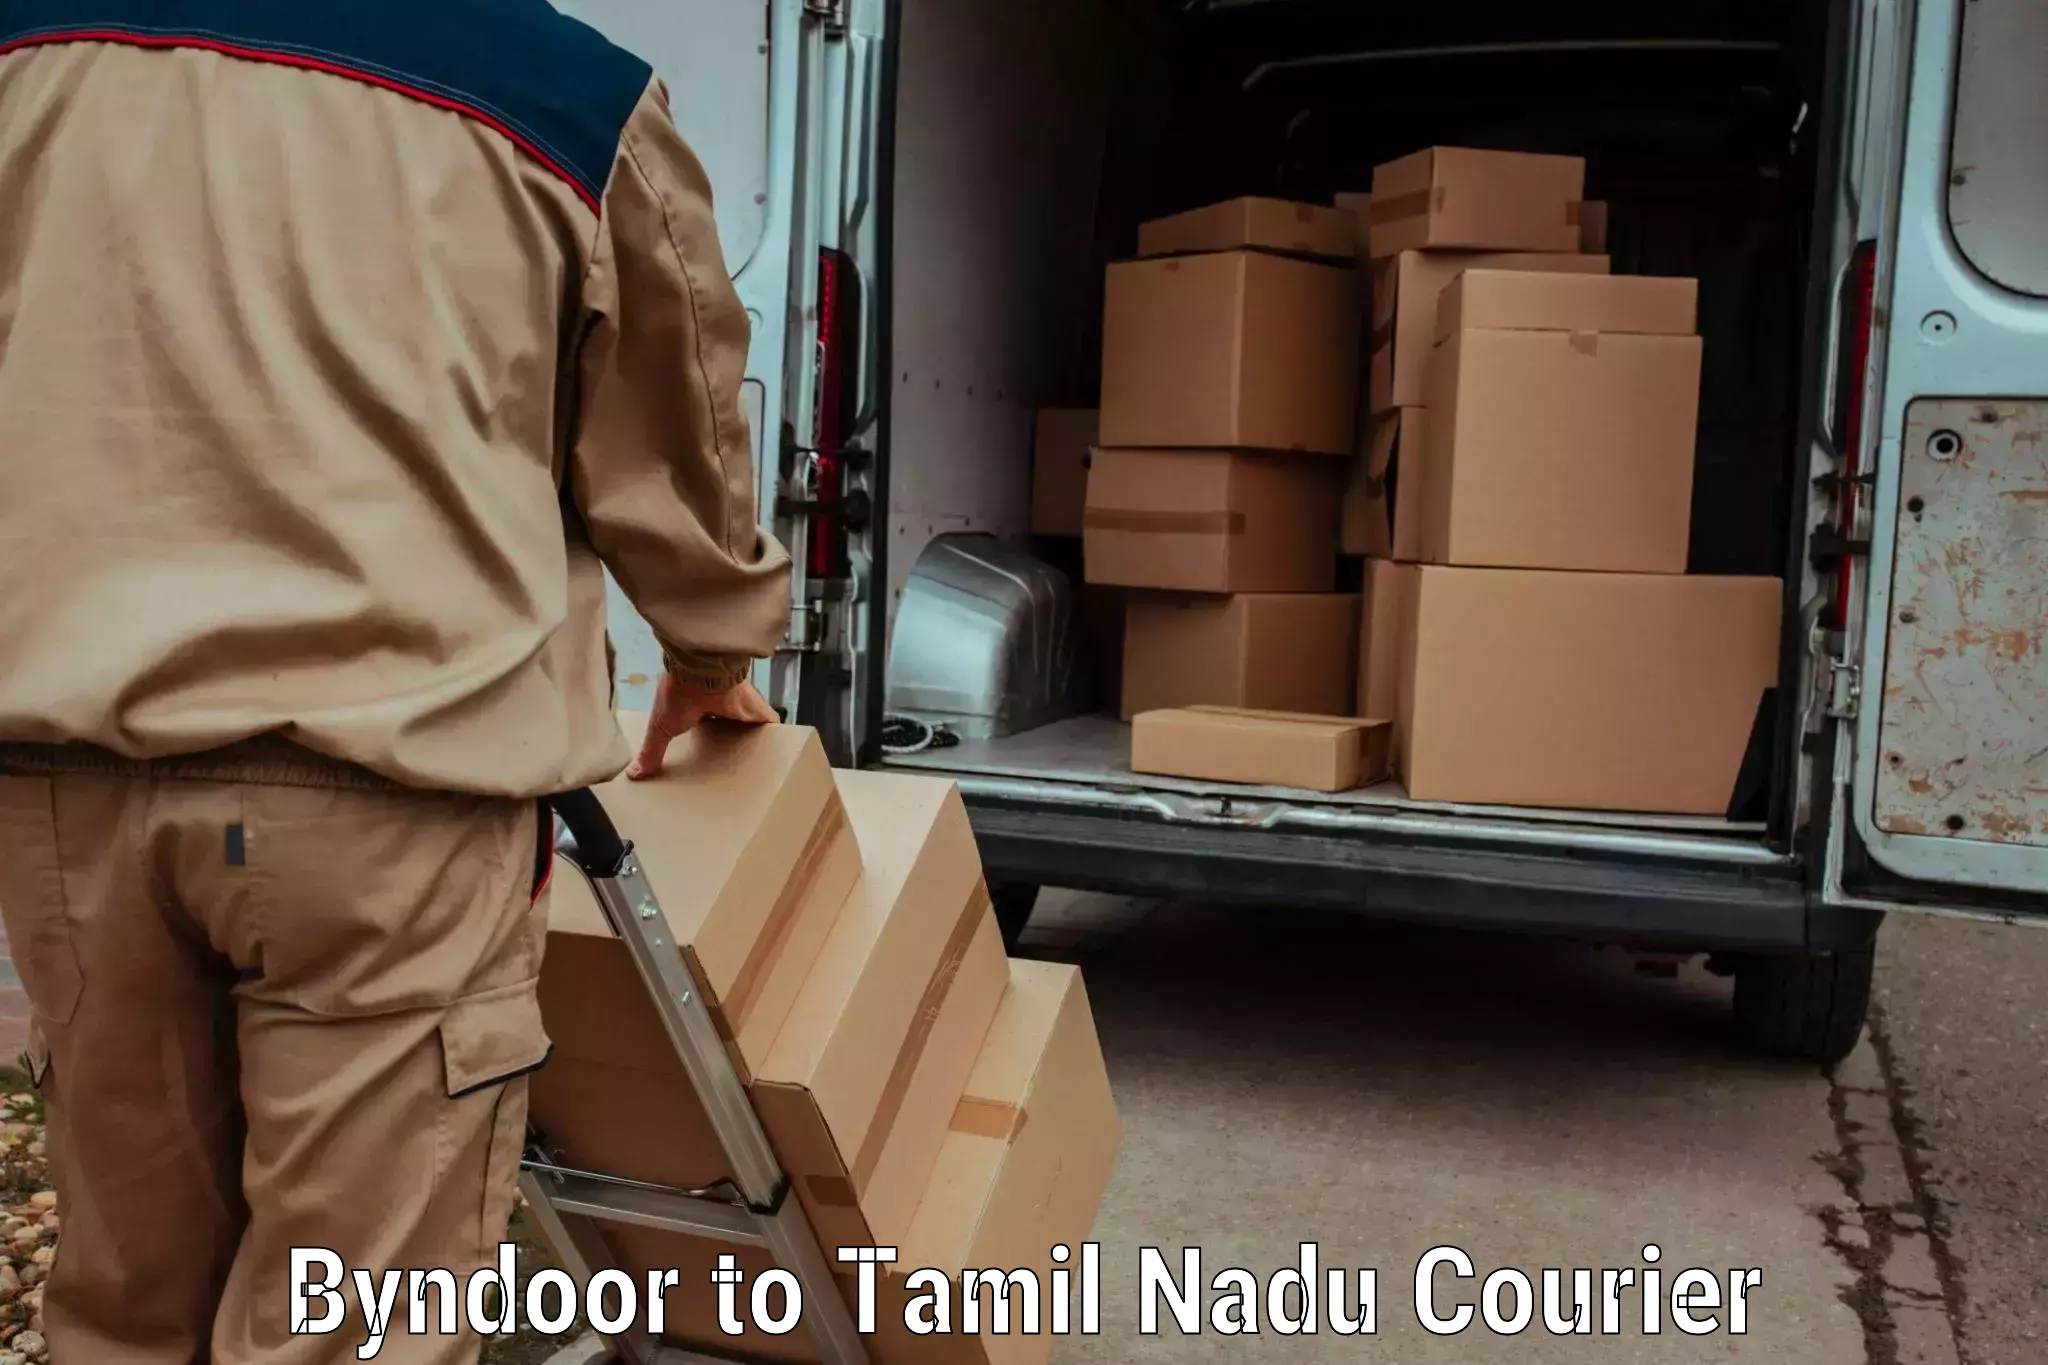 24-hour courier service Byndoor to IIIT Tiruchirappalli